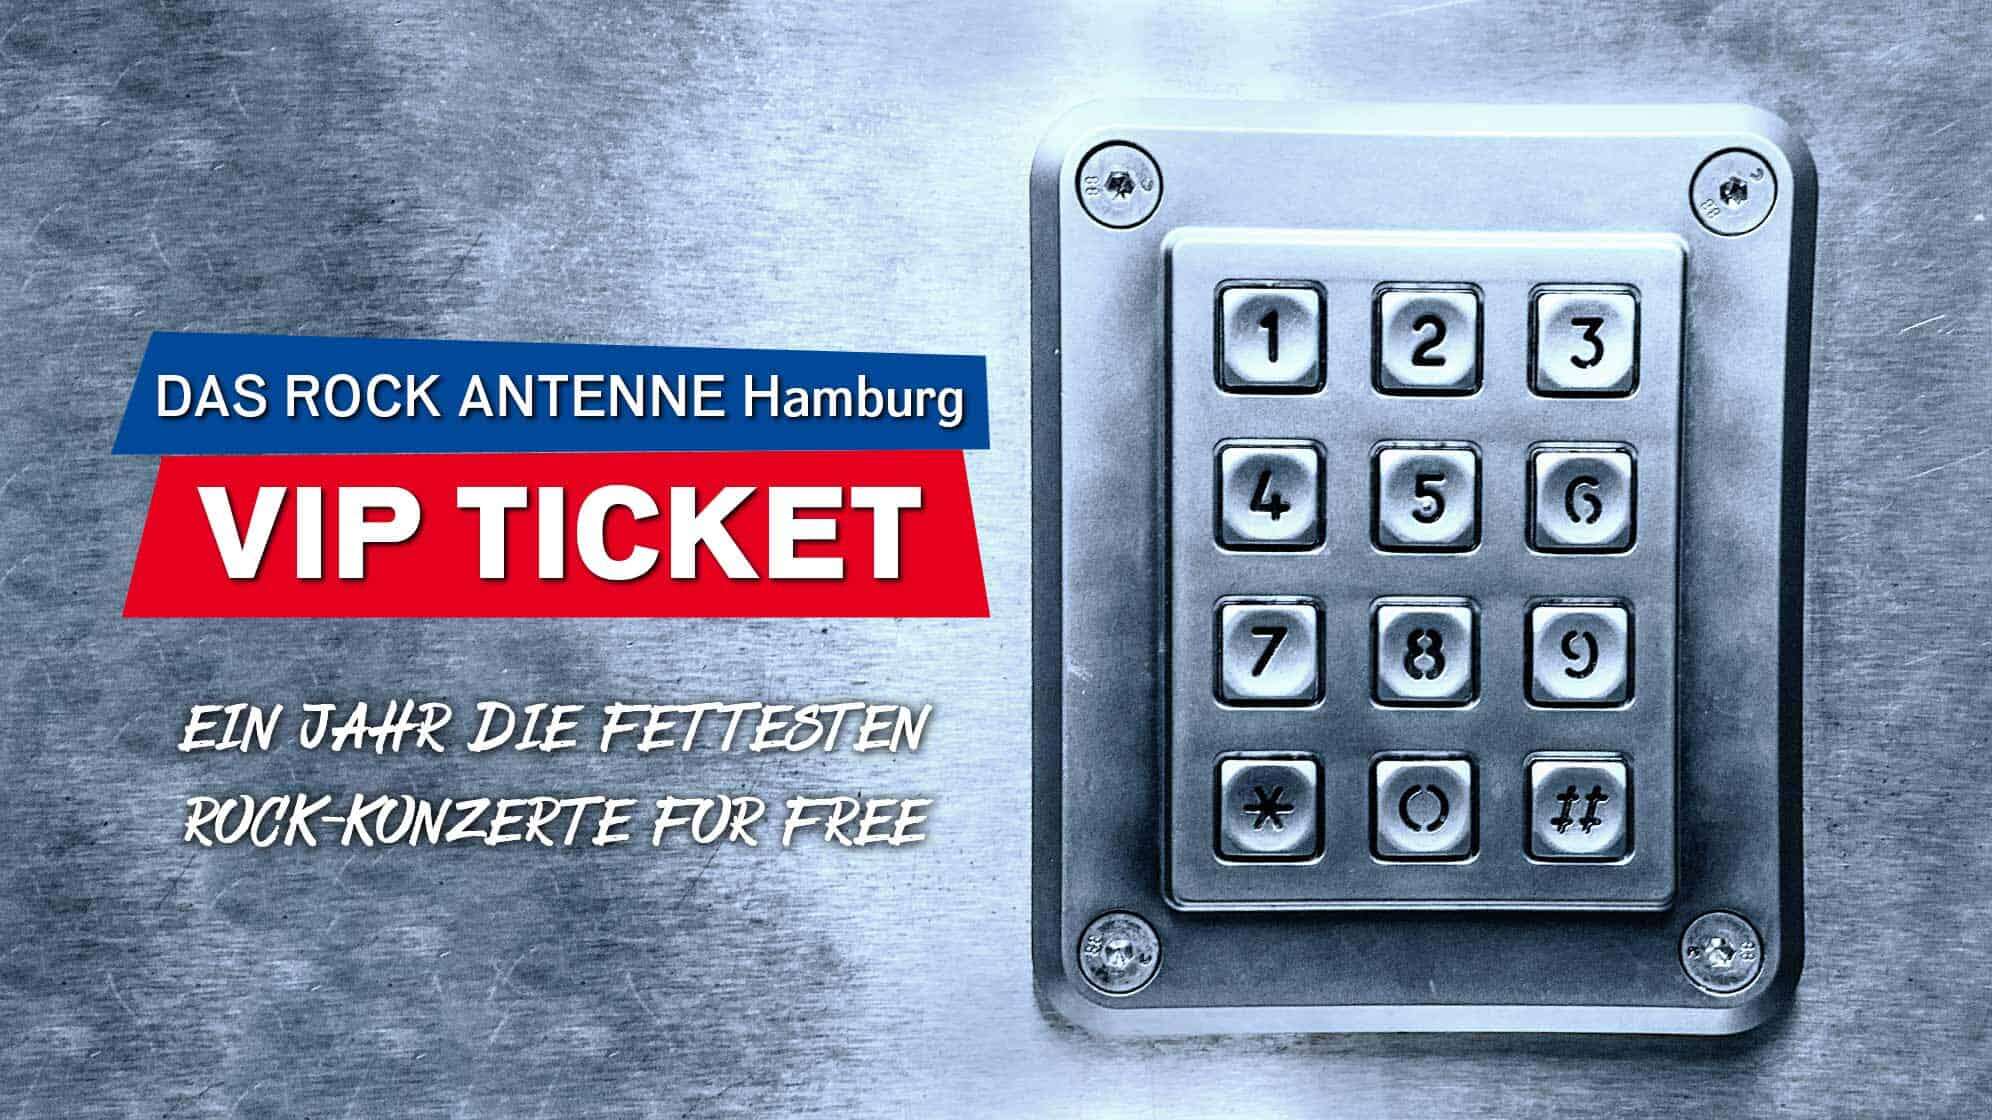 Bild eines Zahlenschlosses auf einer Tresortür, Text: Das ROCK ANTENNE Hamburg VIP Ticket: Ein Jahr die fettesten Rock-Konzerte for free